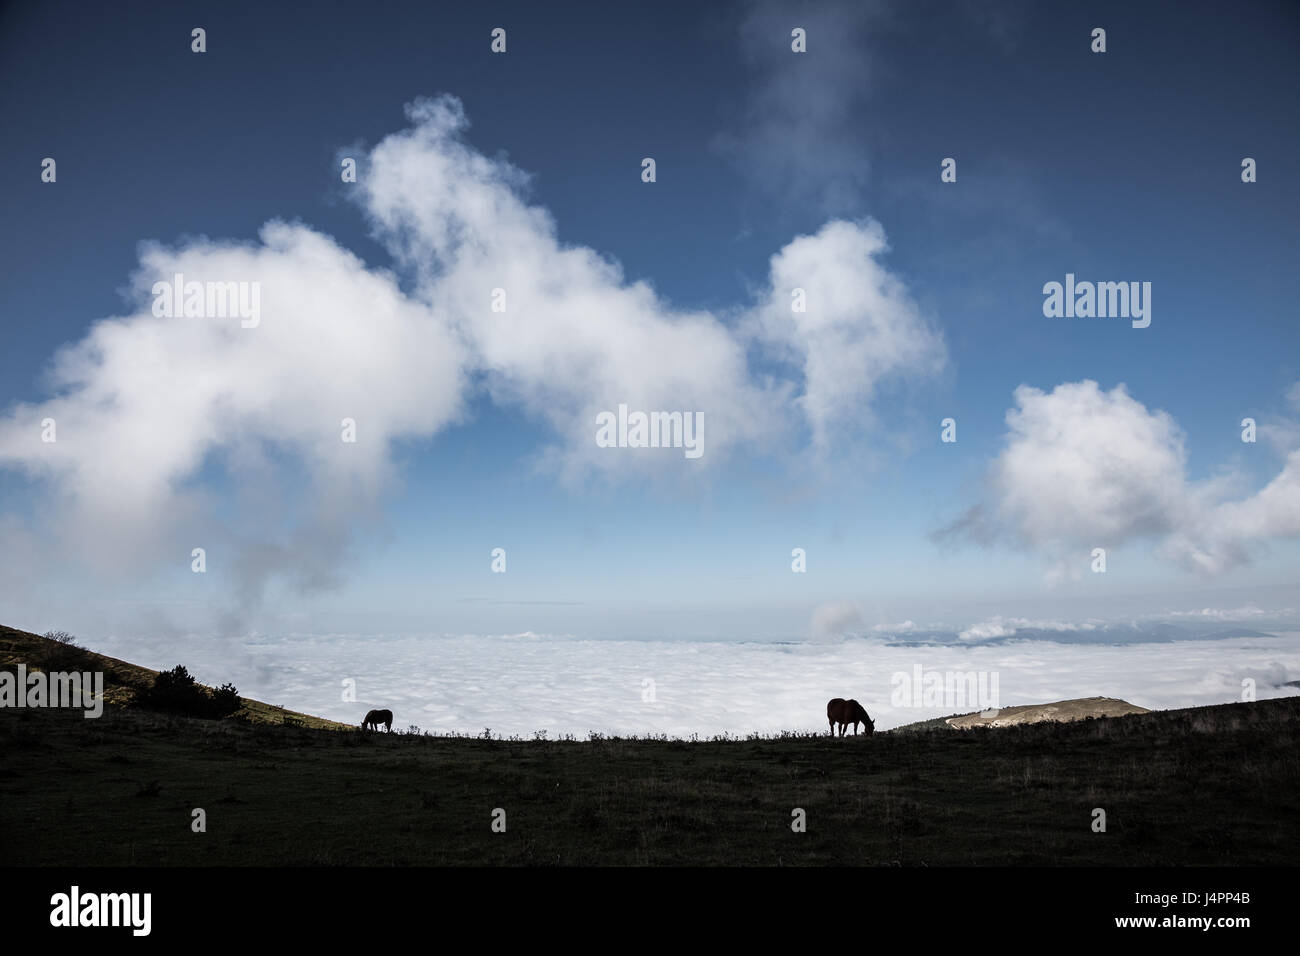 Deux silhouettes de chevaux sur une montagne, sous un grand ciel bleu avec quelques nuages, très proche et sur une vallée pleine de brouillard Banque D'Images